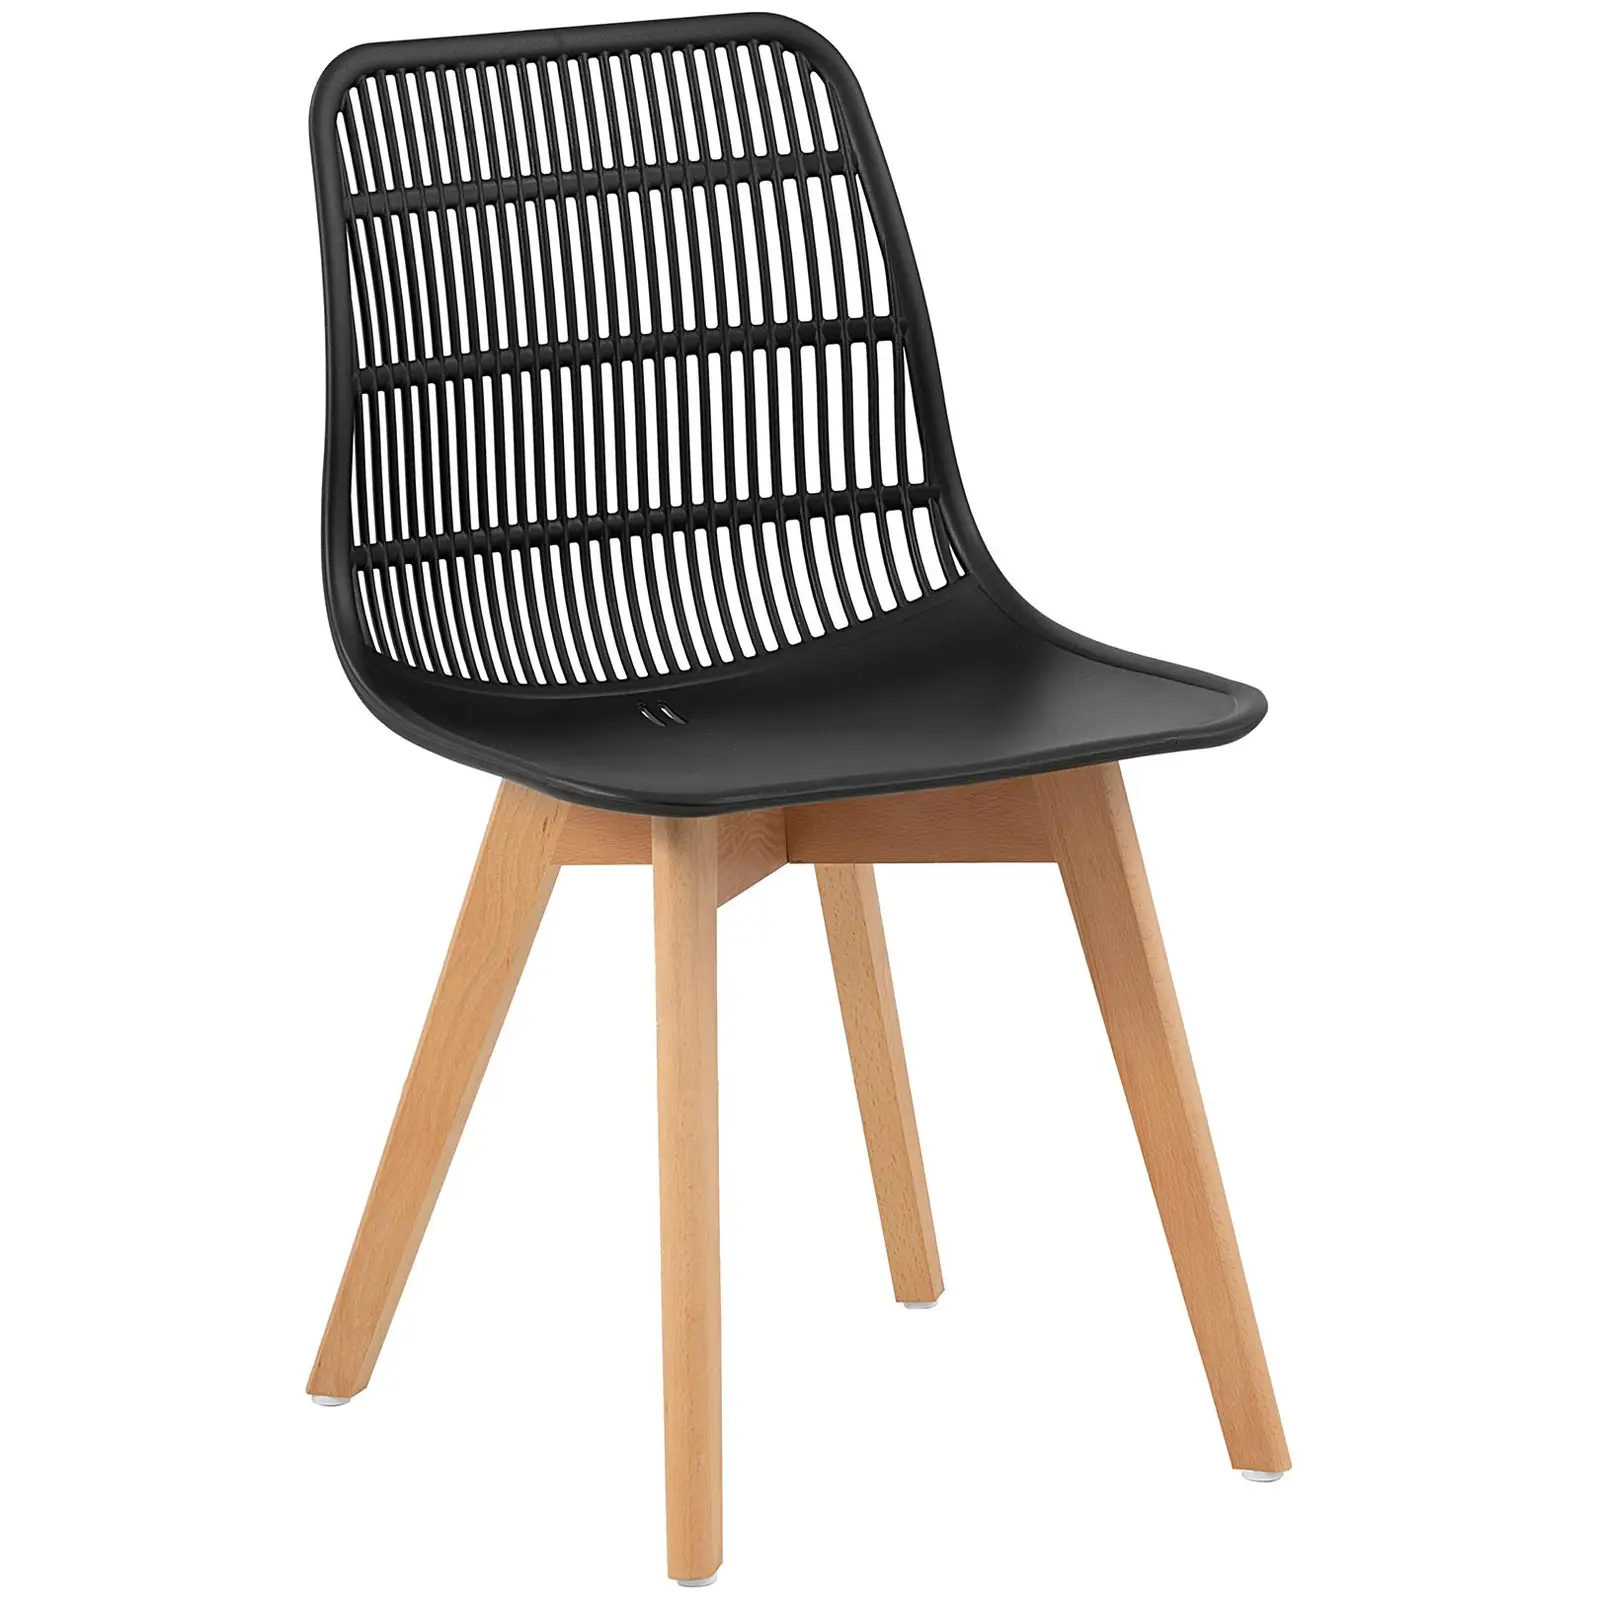 Chaise - Lot de 2 - 150 kg max. - Surface d'assise de 460 x 460 x 450 mm - Coloris noir